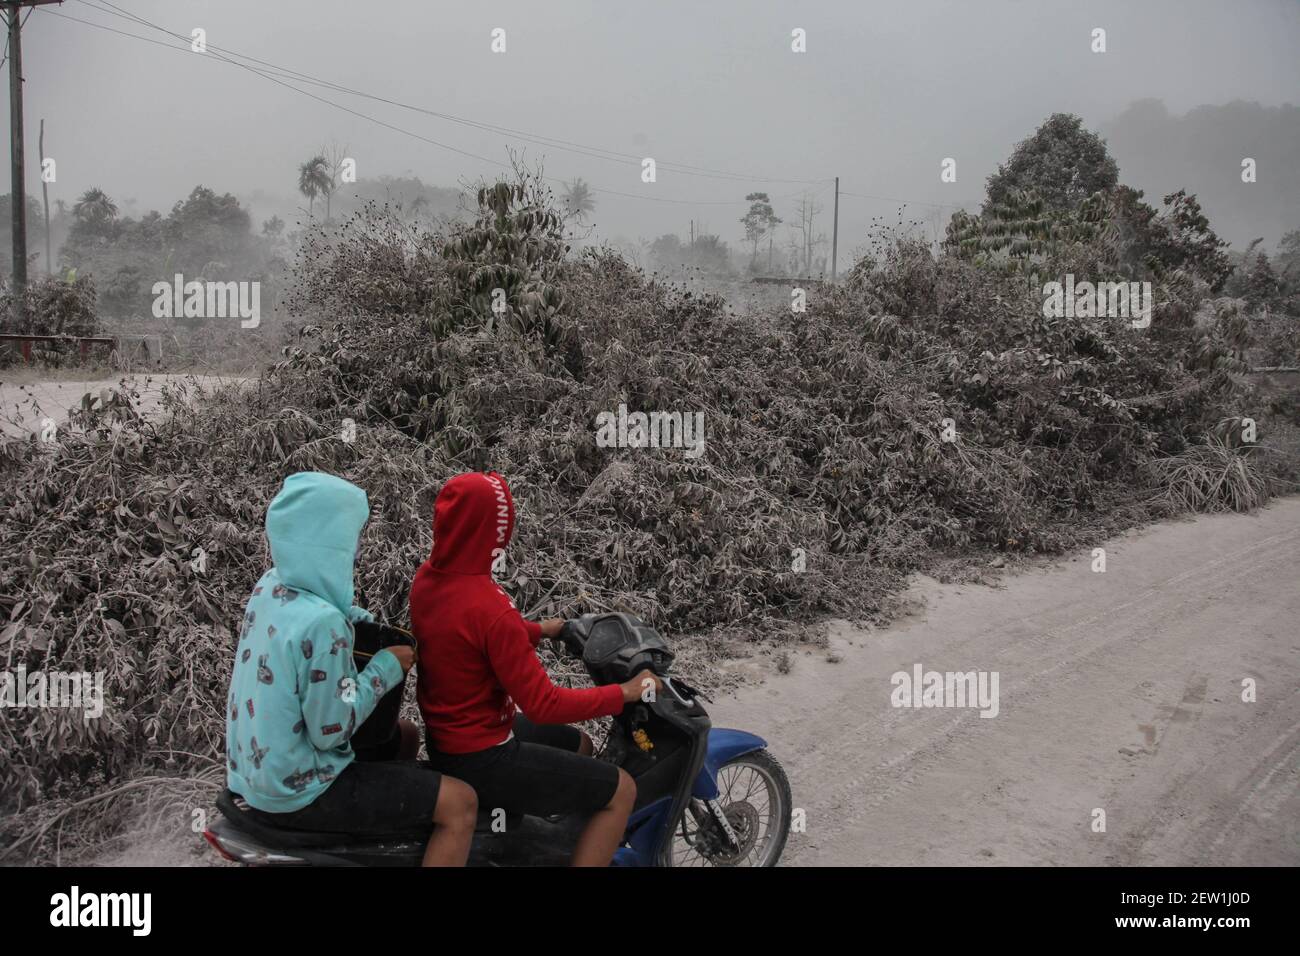 Sumatra Nord. 2 mars 2021. Photo prise le 2 mars 2021 montre des gens qui  font de leur moto sur une route couverte de cendre bouée par le mont  Sinabung à Karo,